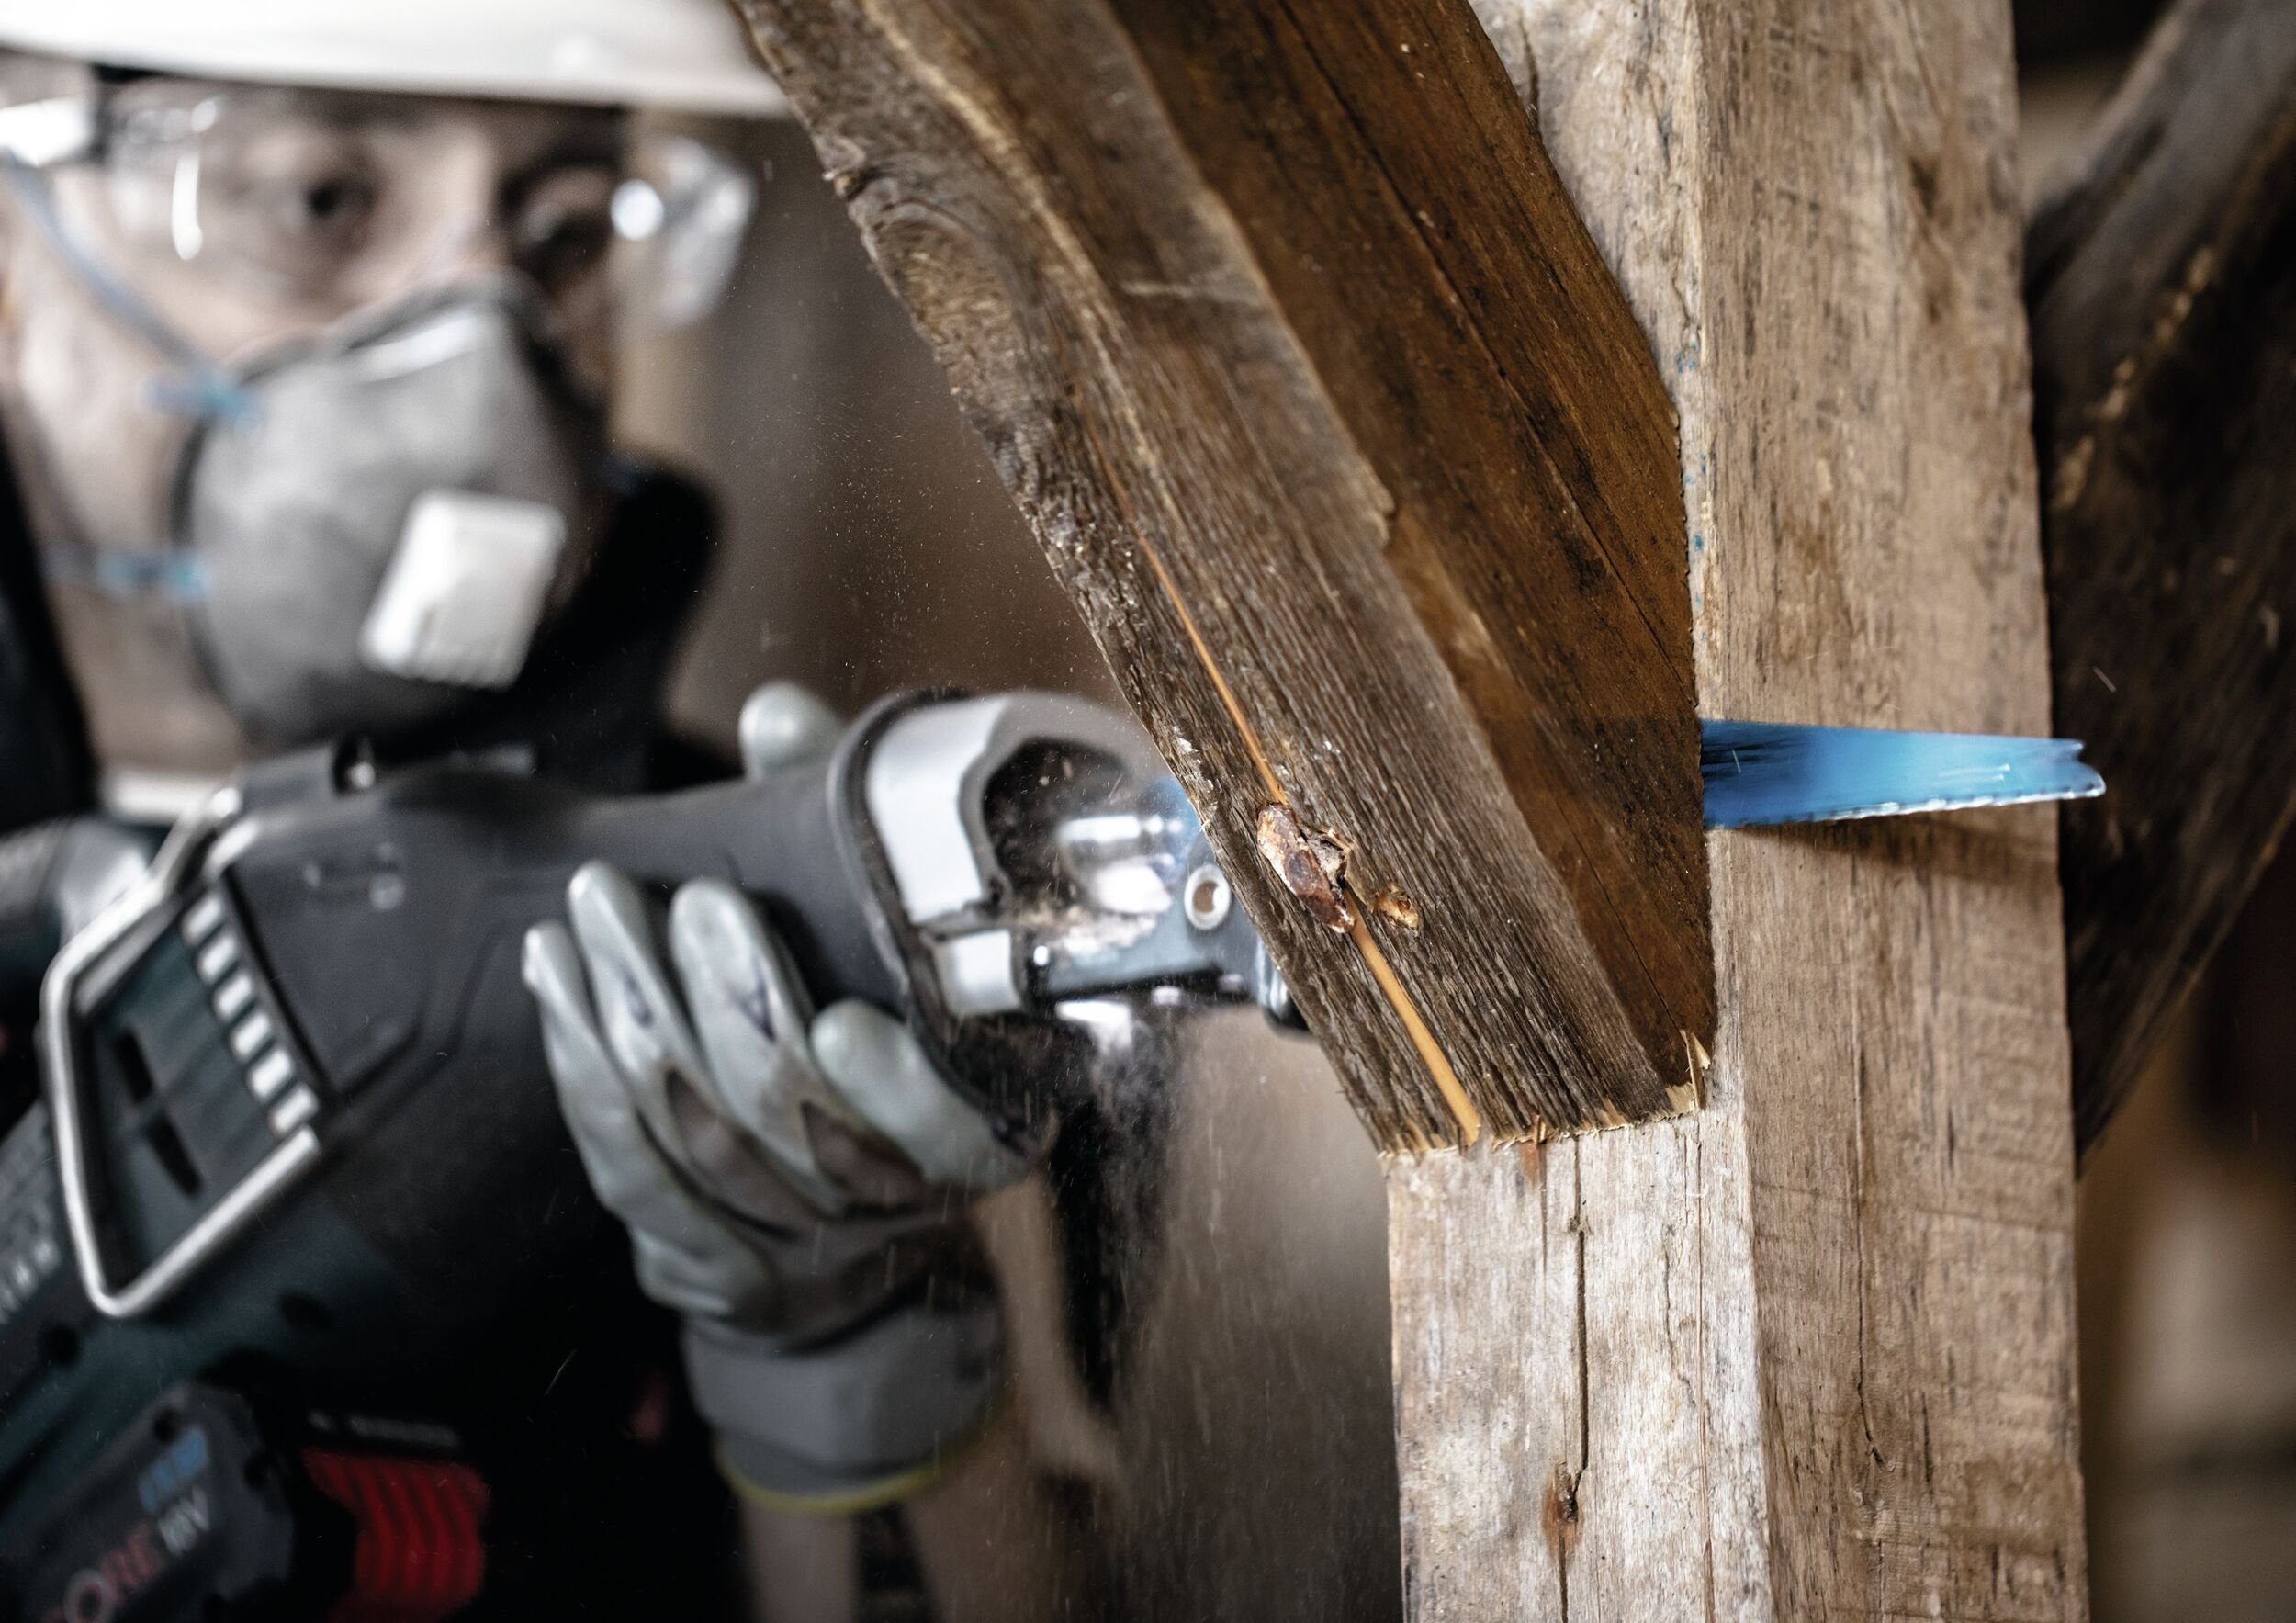 Expert Wood with S Metal Expert Wood Endurance Metal Demolition, 1267 for and Demolition XHM BOSCH Säbelsägeblatt